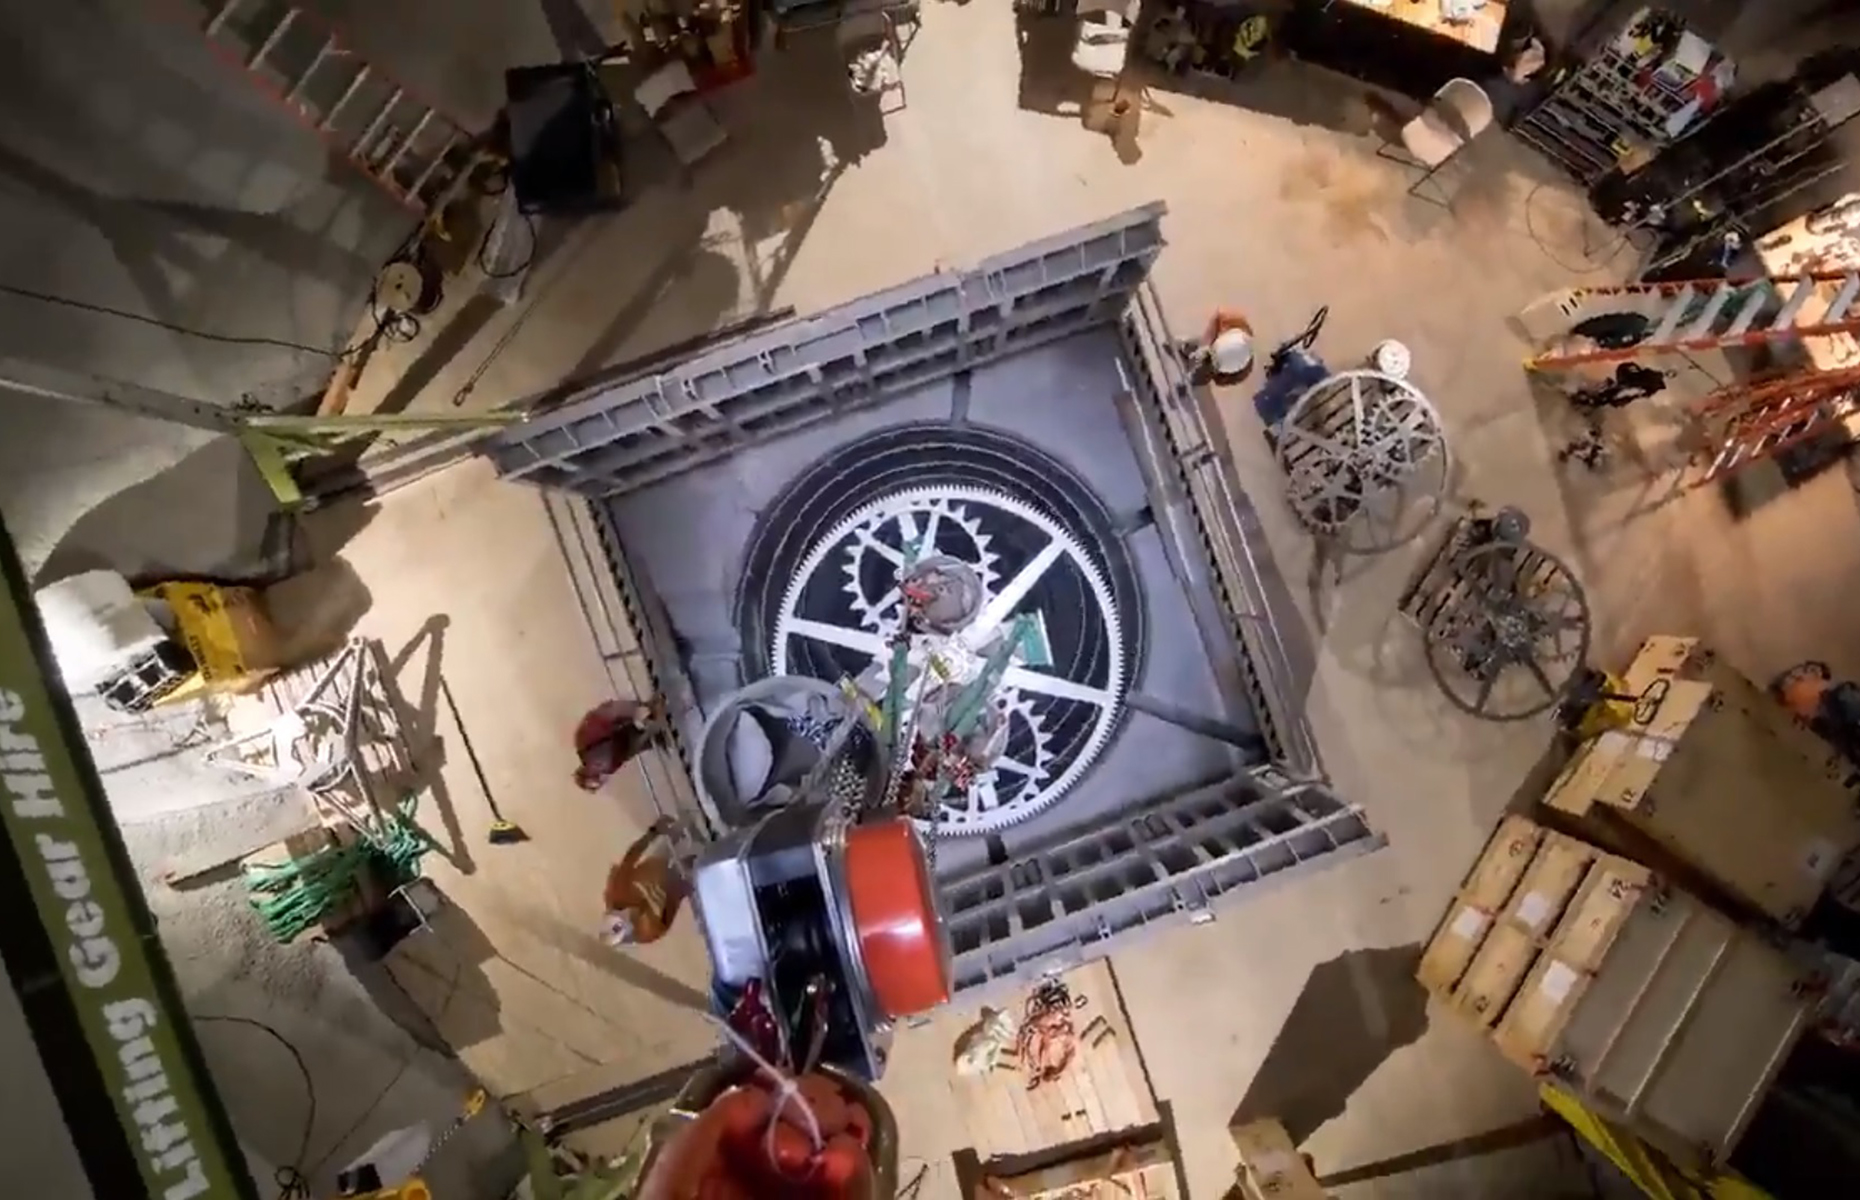 Jeff Bezos' 10,000-year clock. Image: Jeff Bezos/Twitter